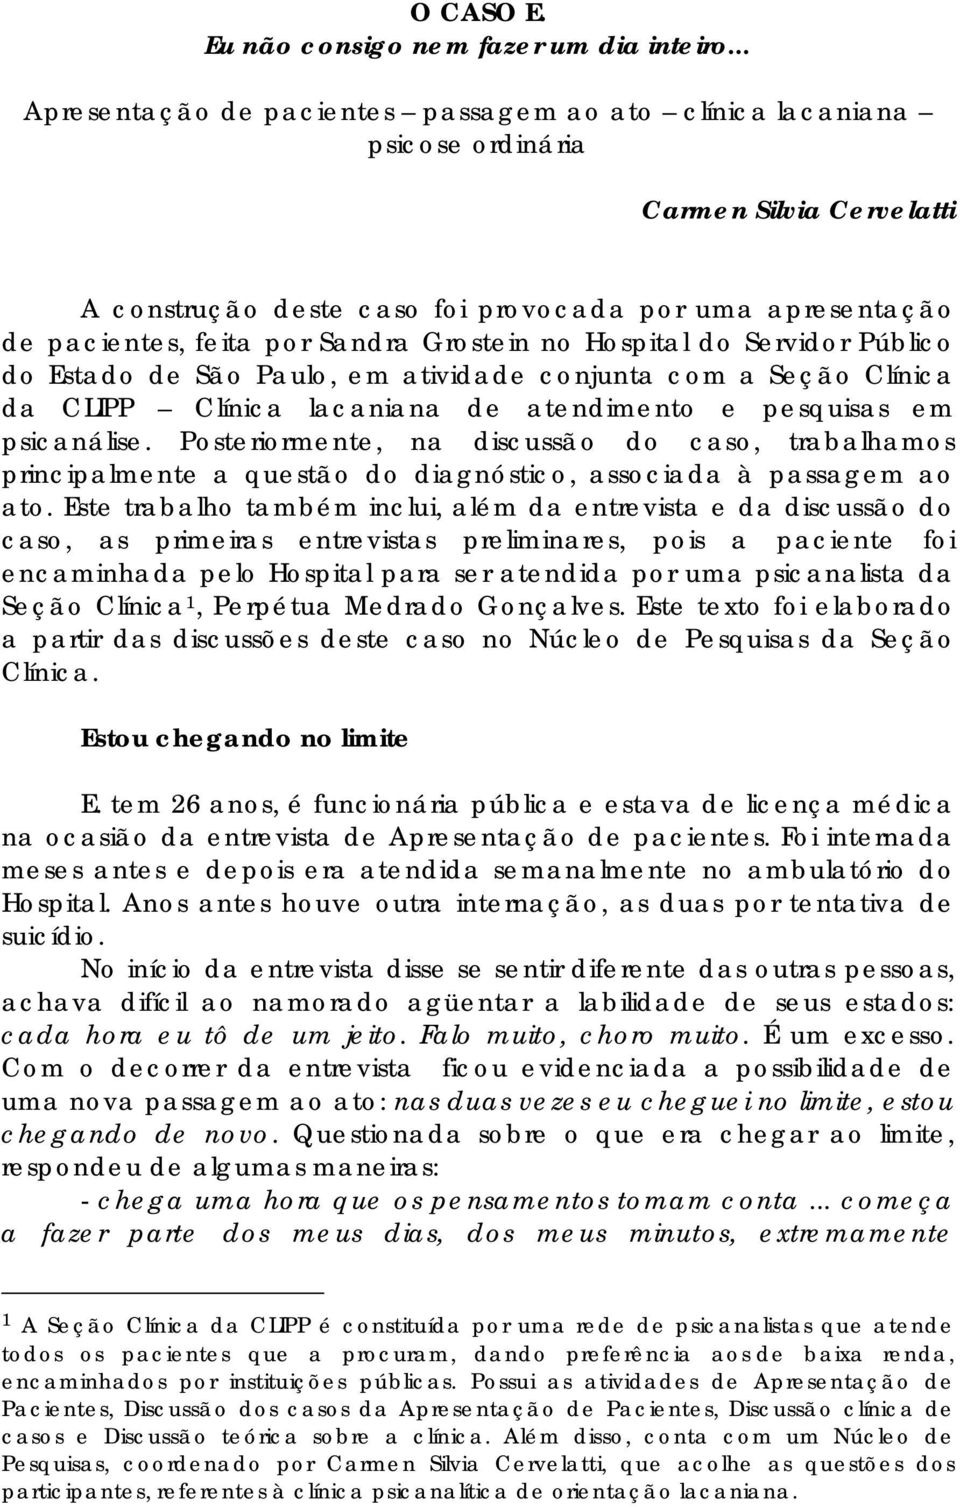 Grostein no Hospital do Servidor Público do Estado de São Paulo, em atividade conjunta com a Seção Clínica da CLIPP Clínica lacaniana de atendimento e pesquisas em psicanálise.